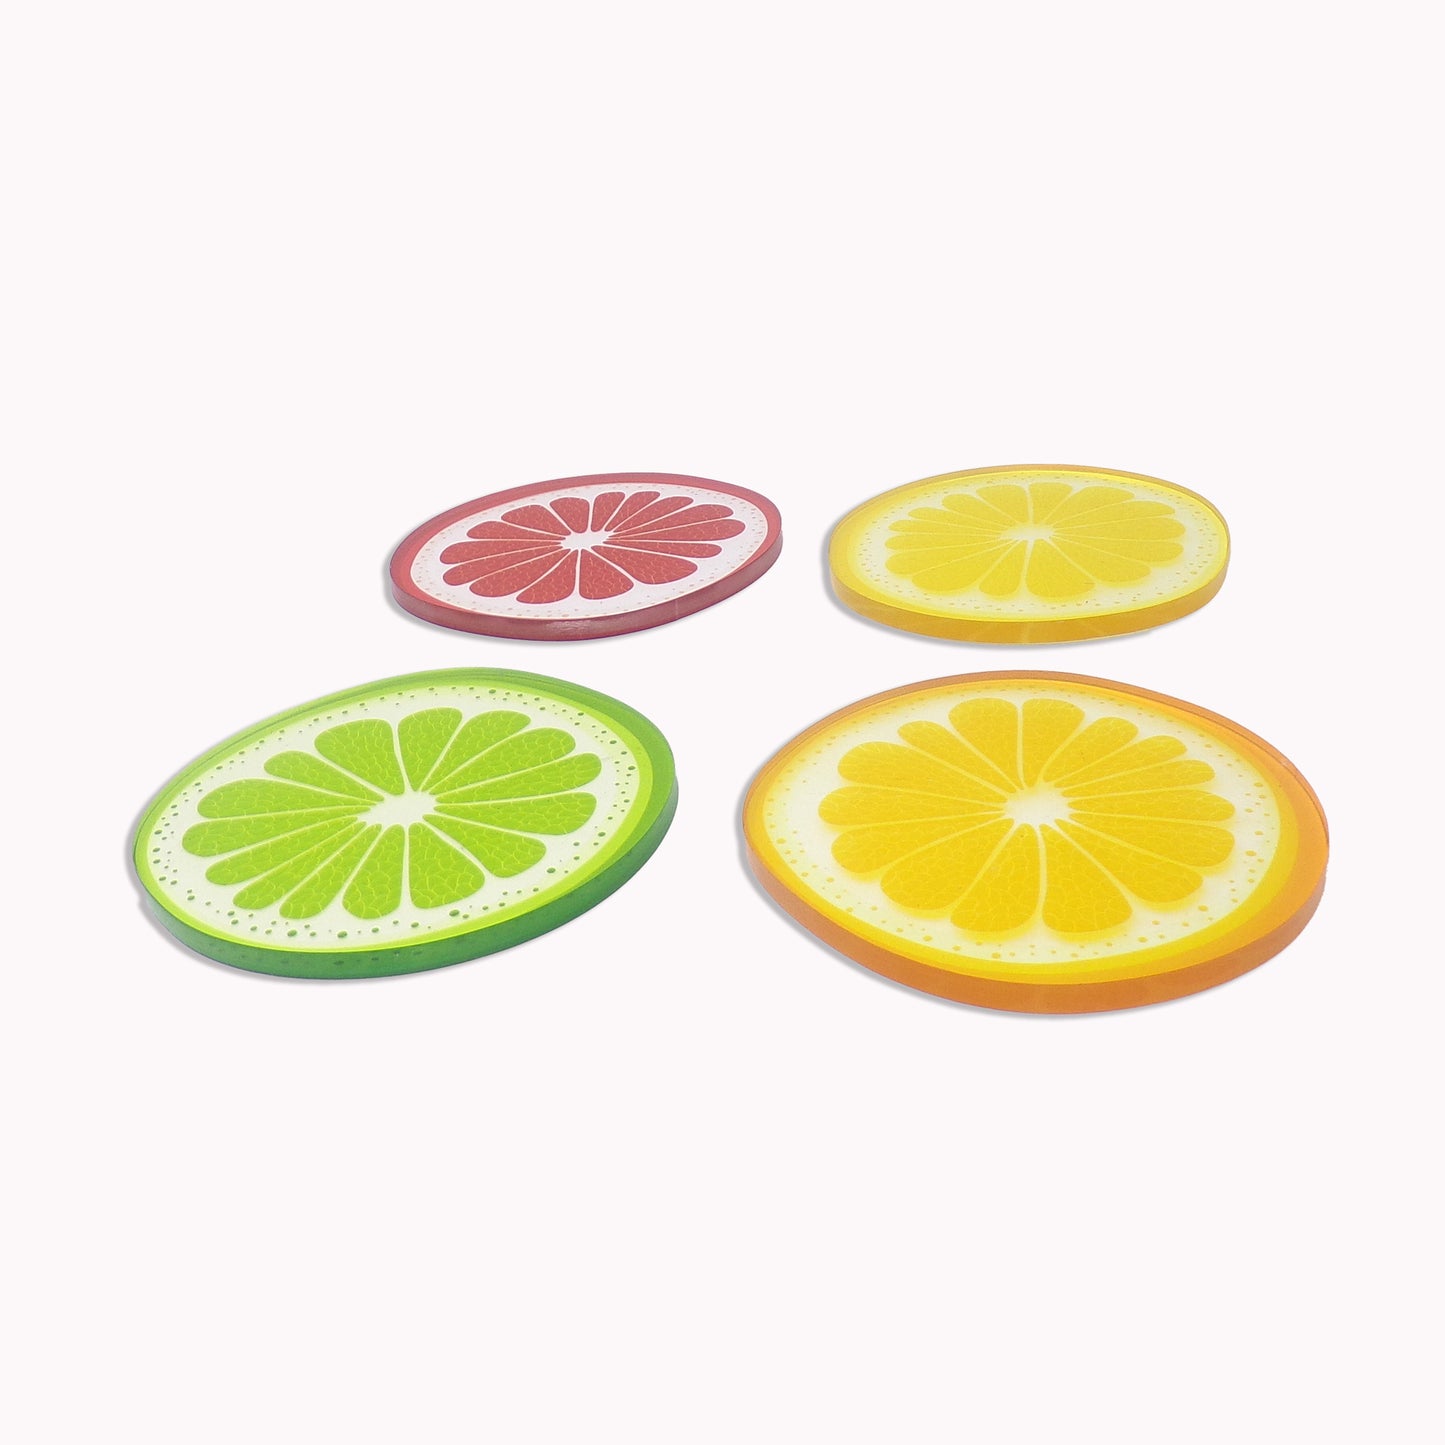 Fruit Coaster set of 4